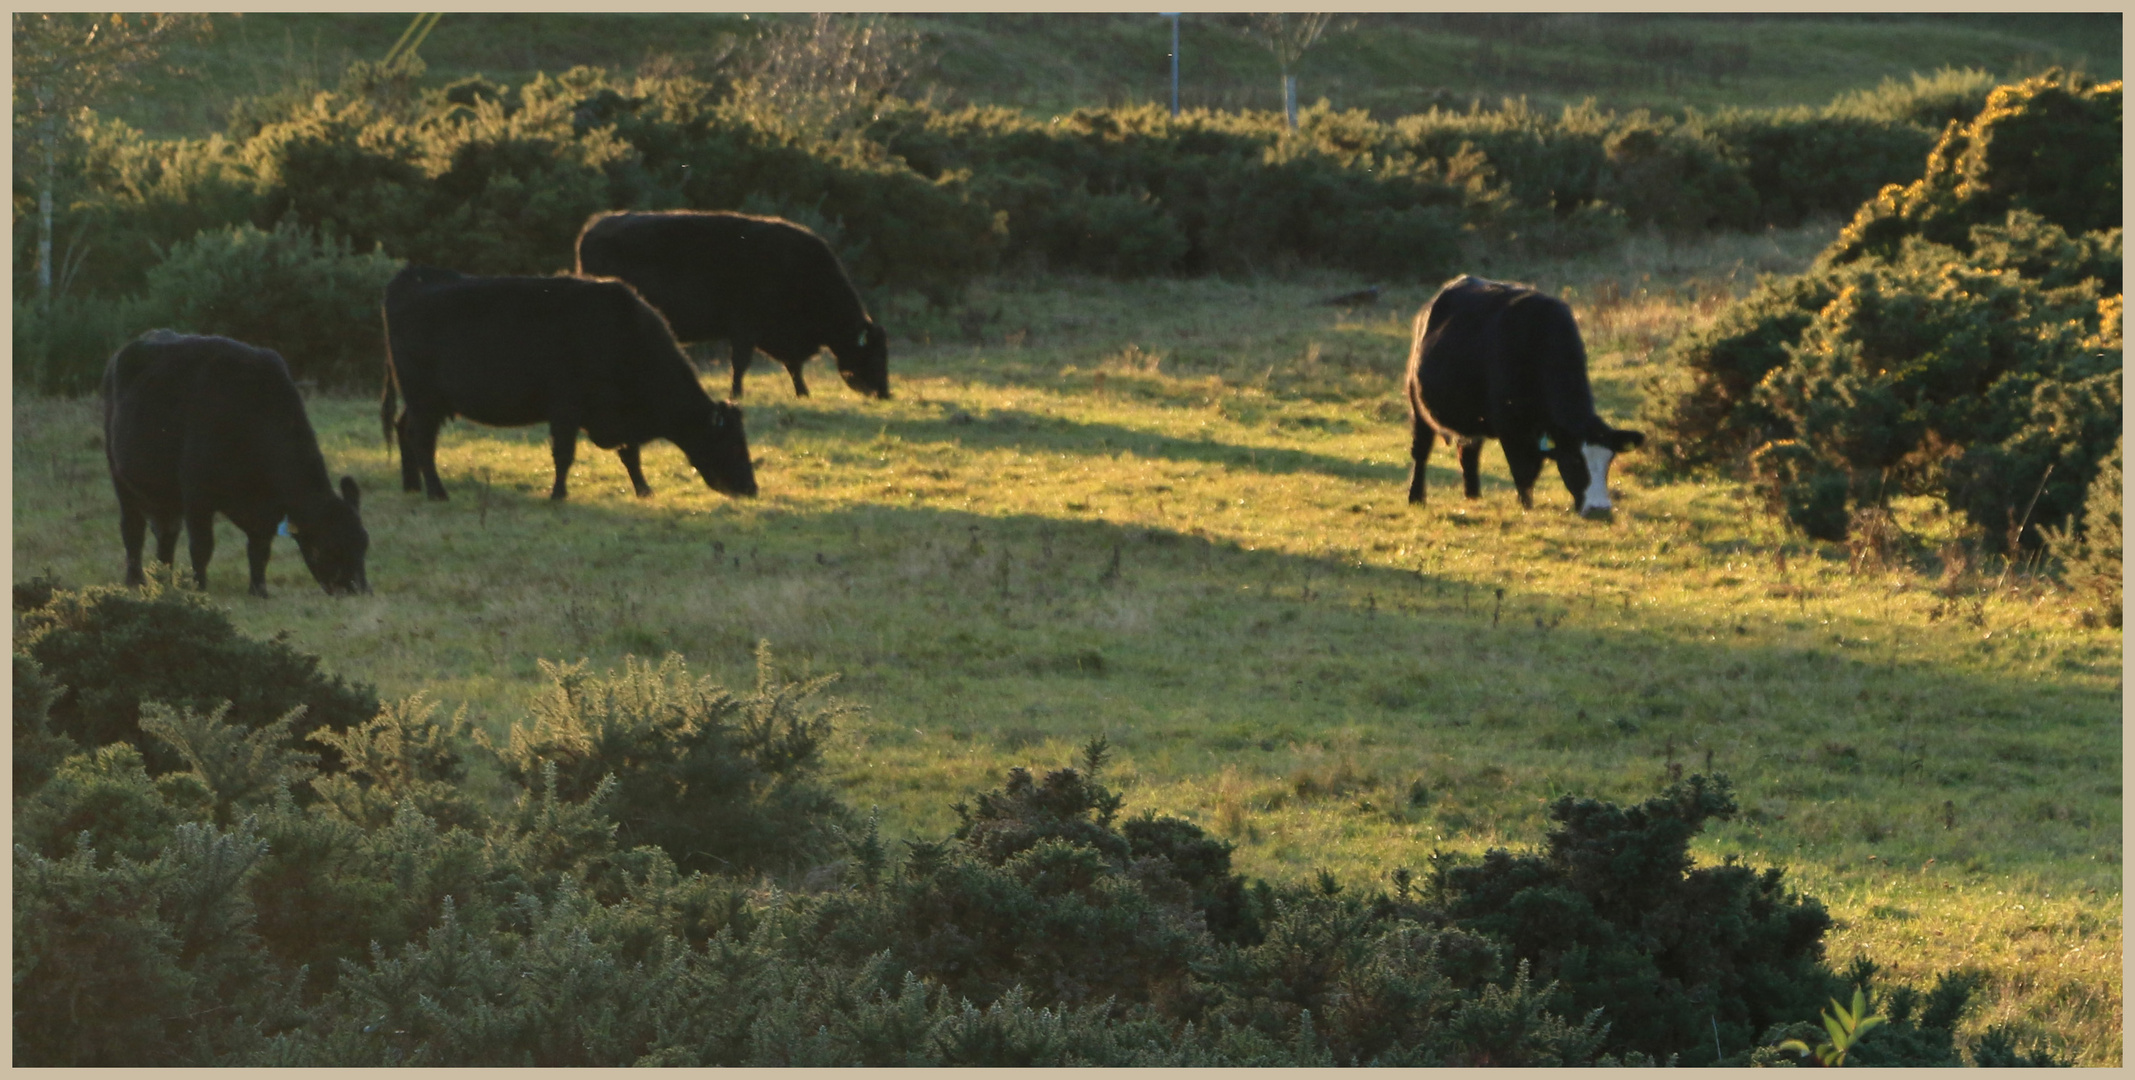 cattle near Ingram